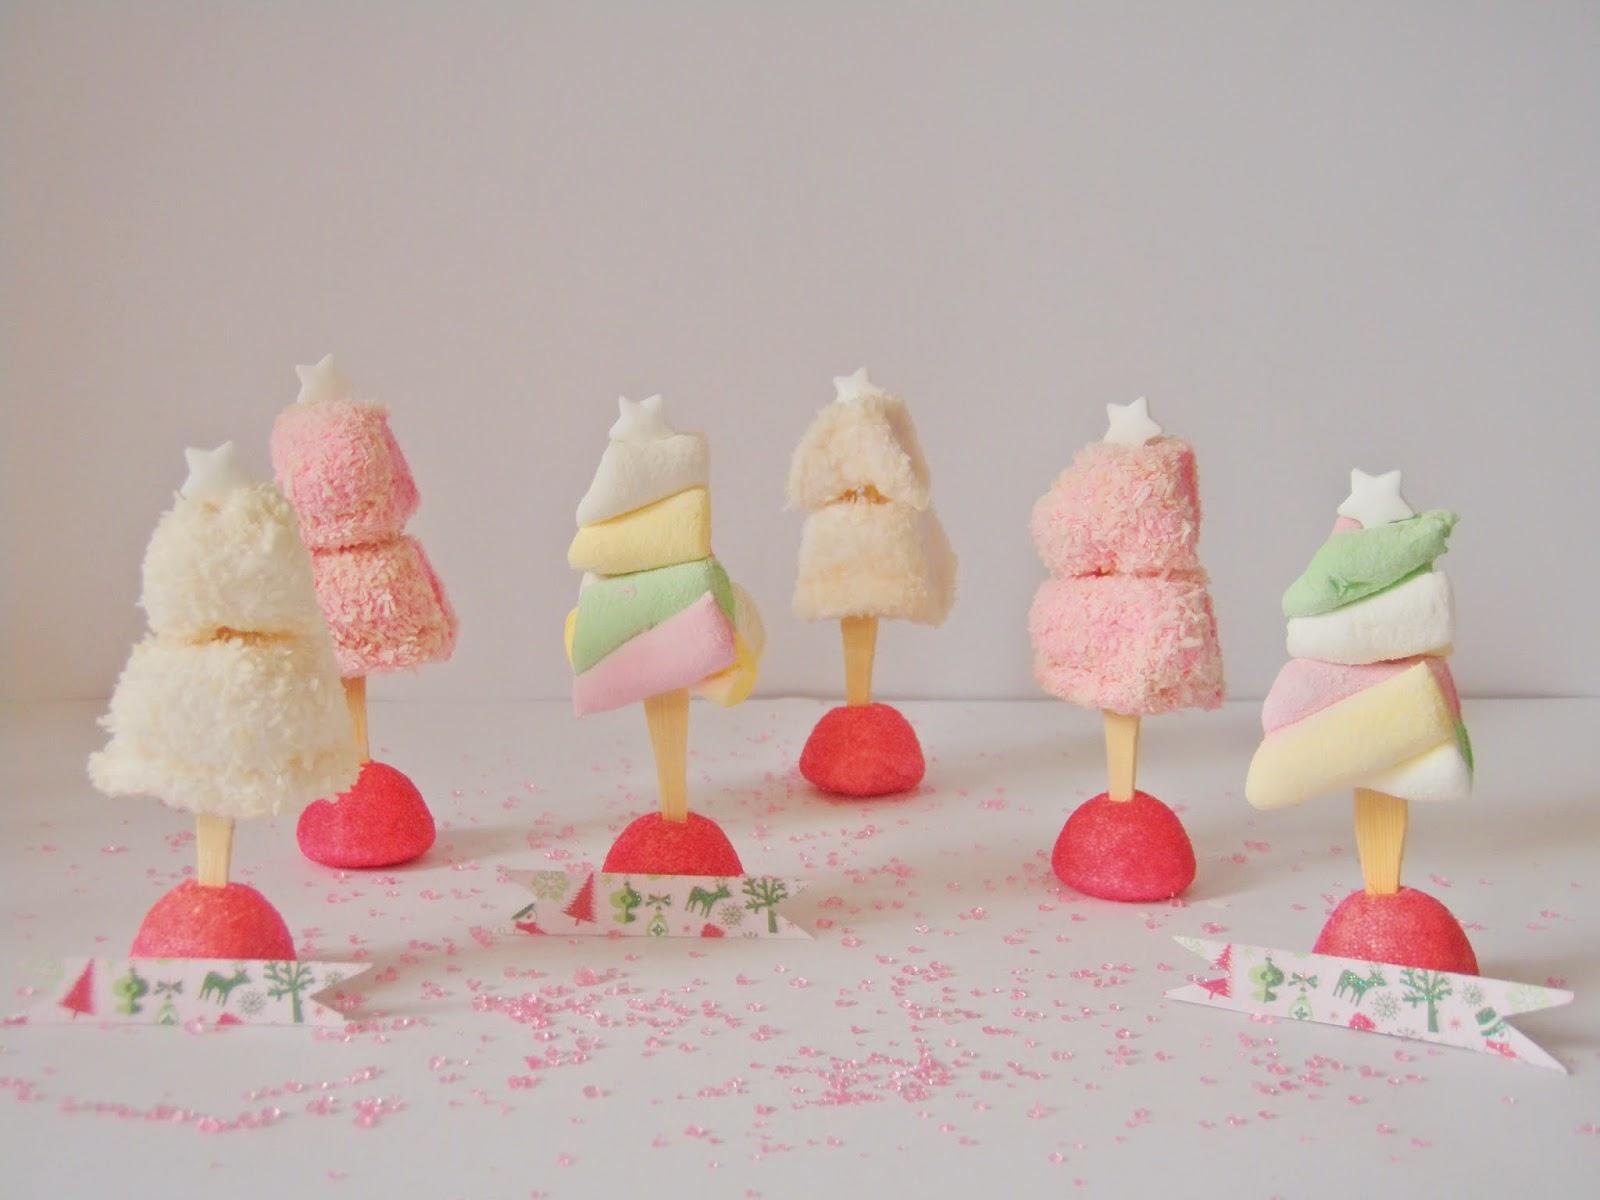 Noël pastel et sucré #5 : Des sapins marque-places en bonbons